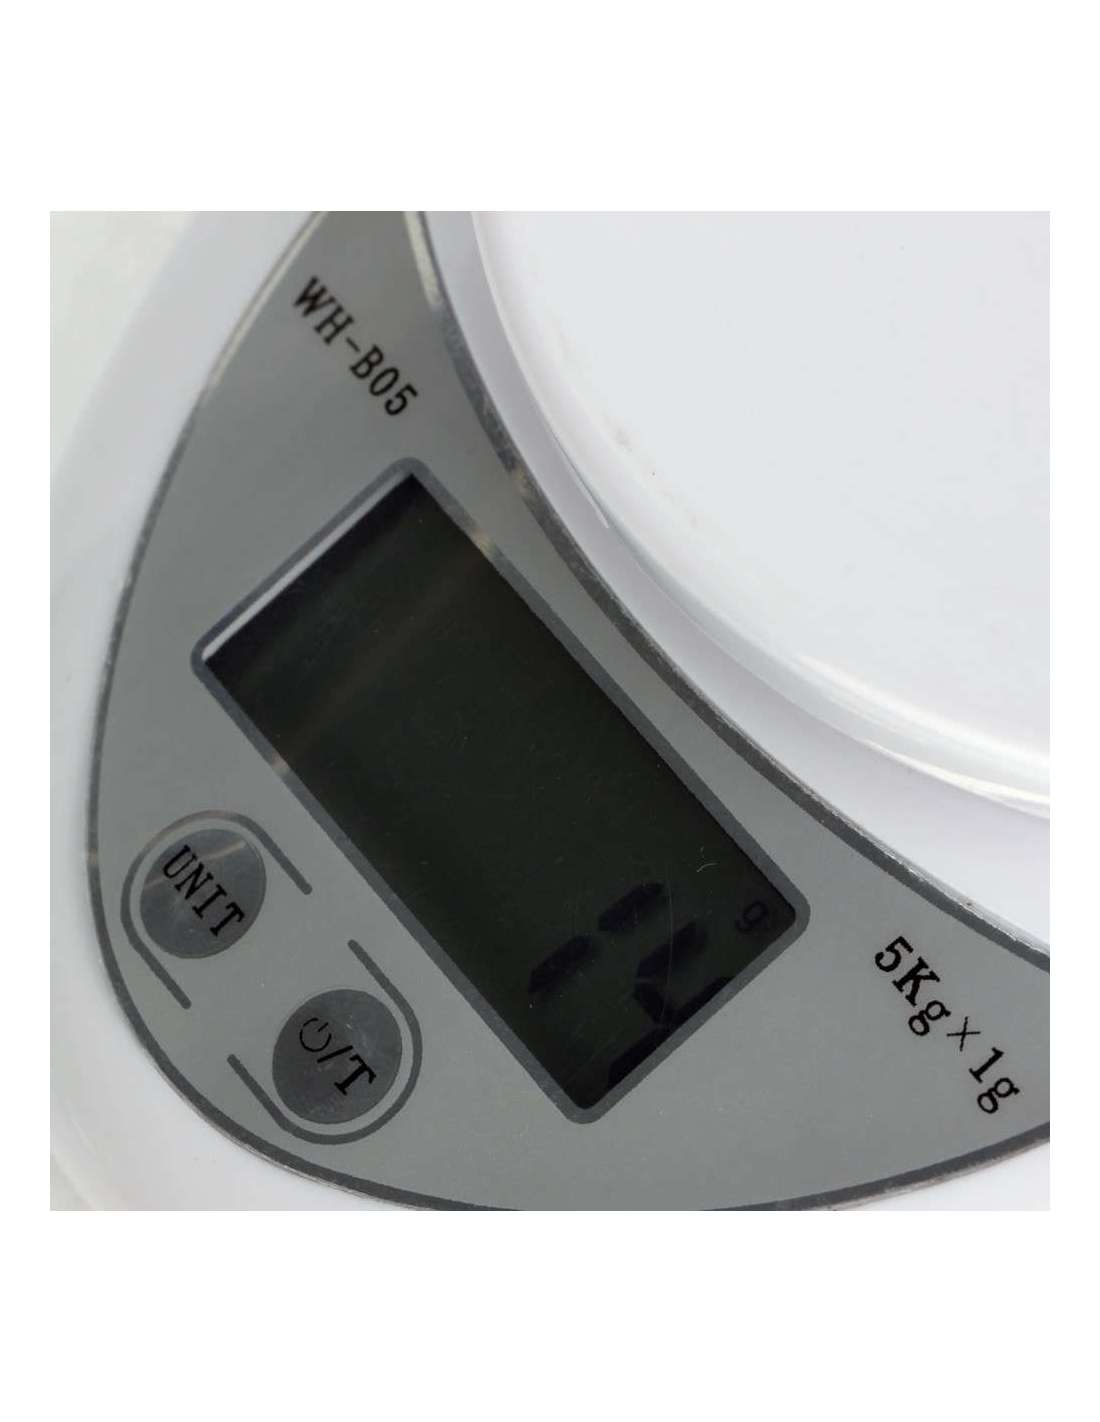 Báscula digital de cocina para medir con exactitud tus recetas